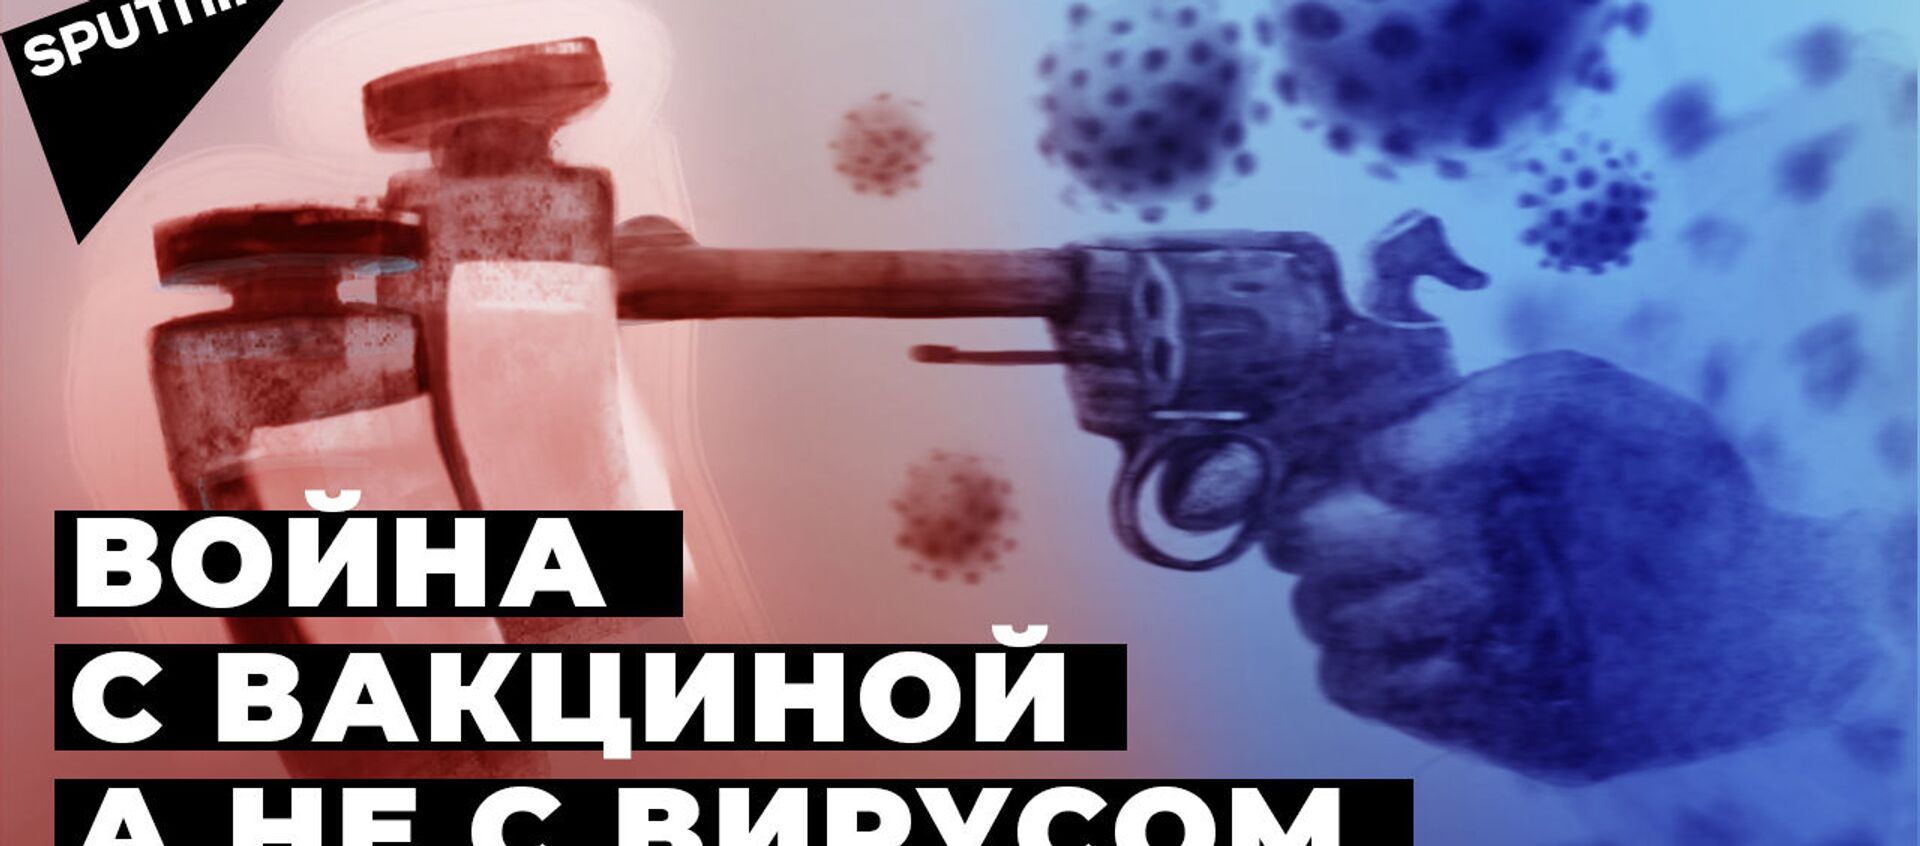 Почему Западу мешает российская вакцина, доказавшая эффективность - видео - Sputnik Армения, 1920, 16.12.2020